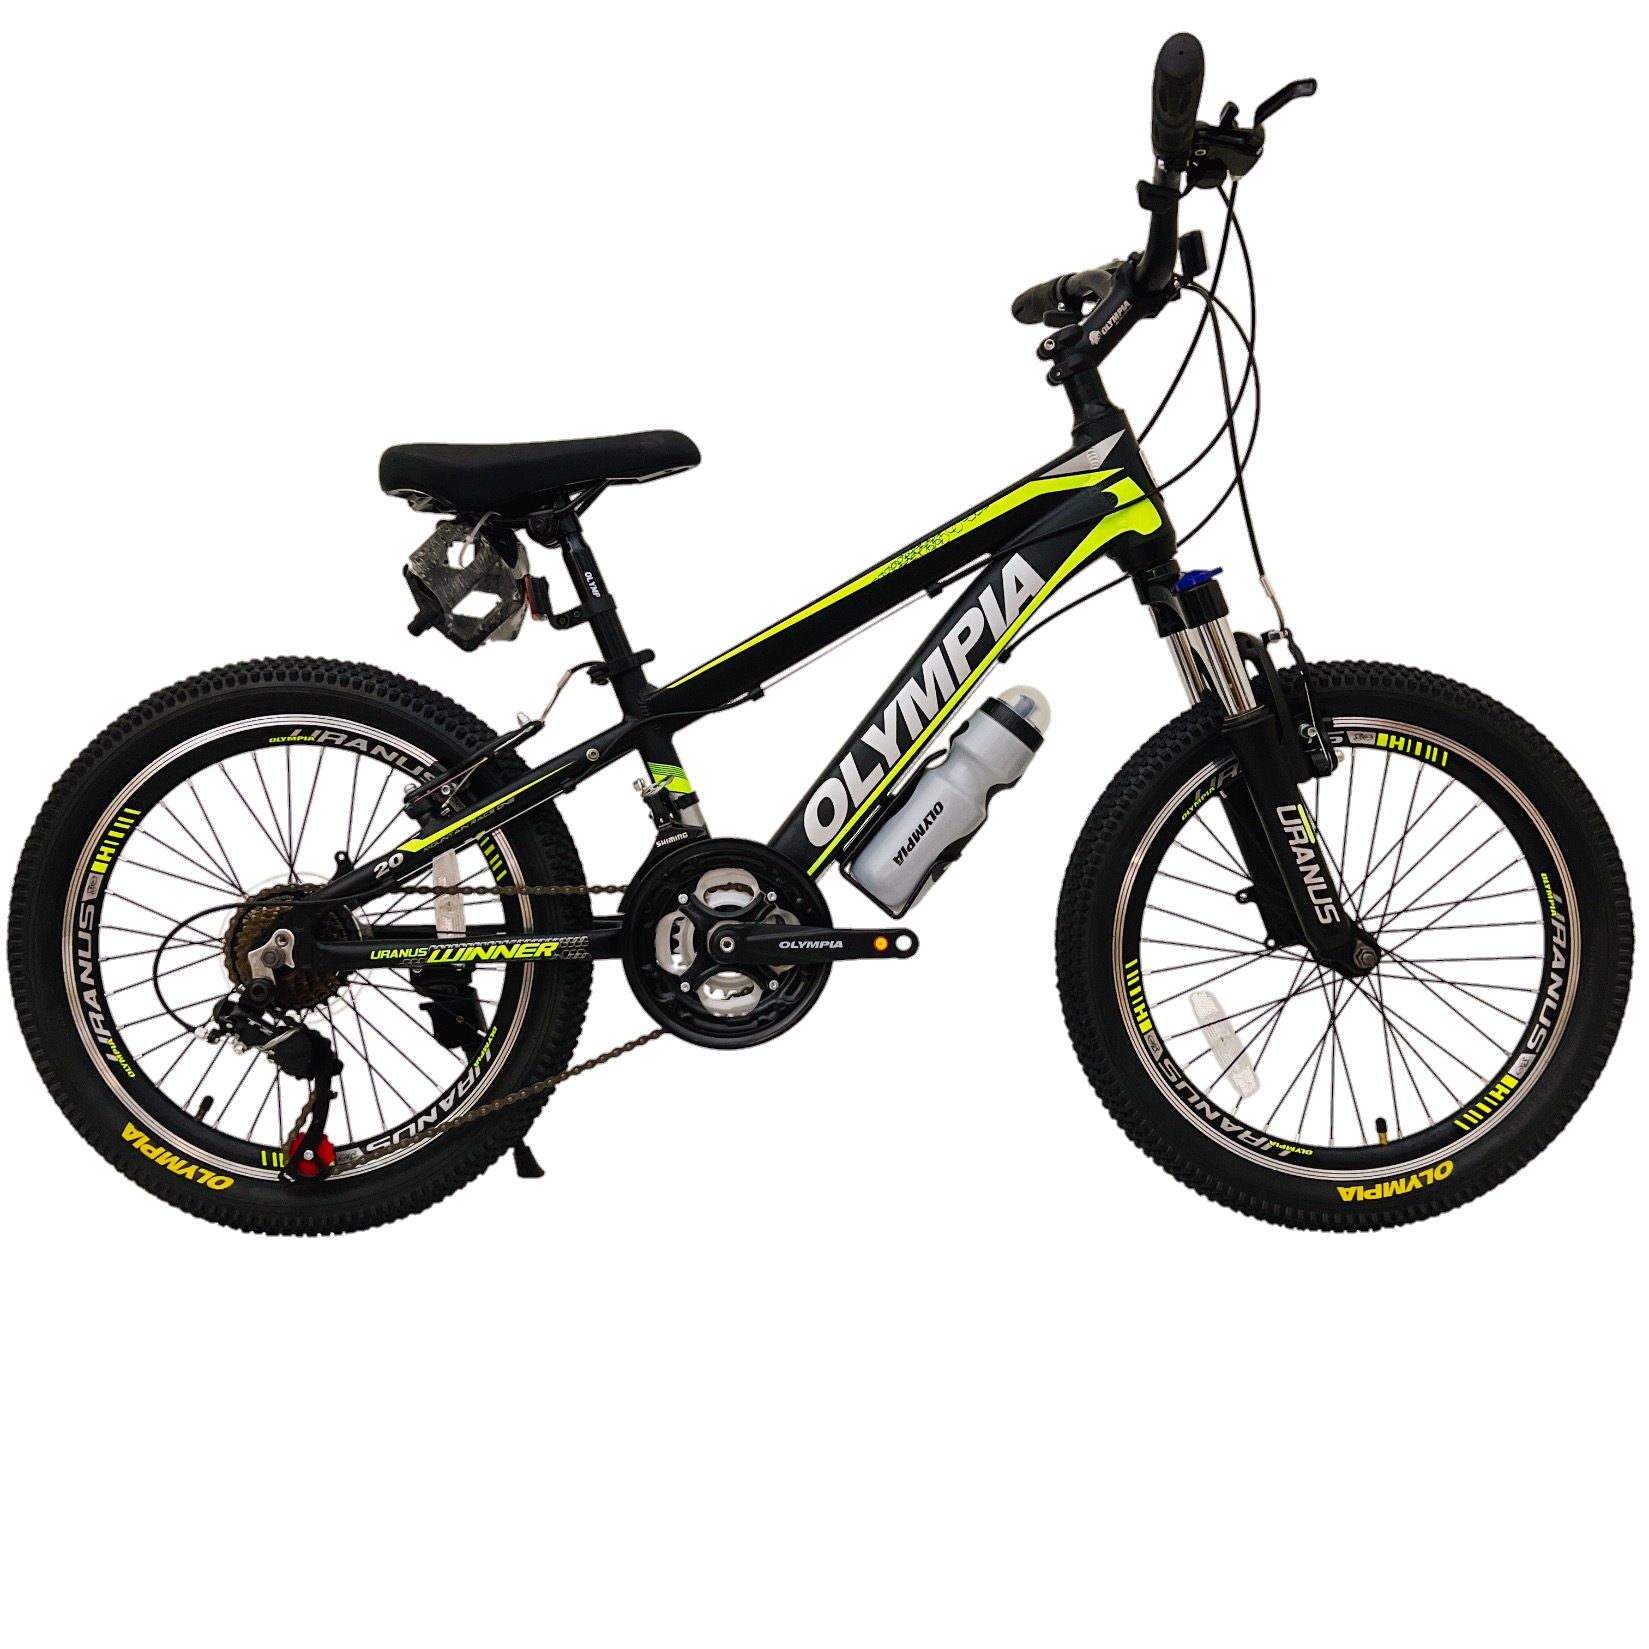 نکته خرید - قیمت روز دوچرخه کوهستان المپیا مدل WINNER کد اورانوس سایز طوقه 20 خرید